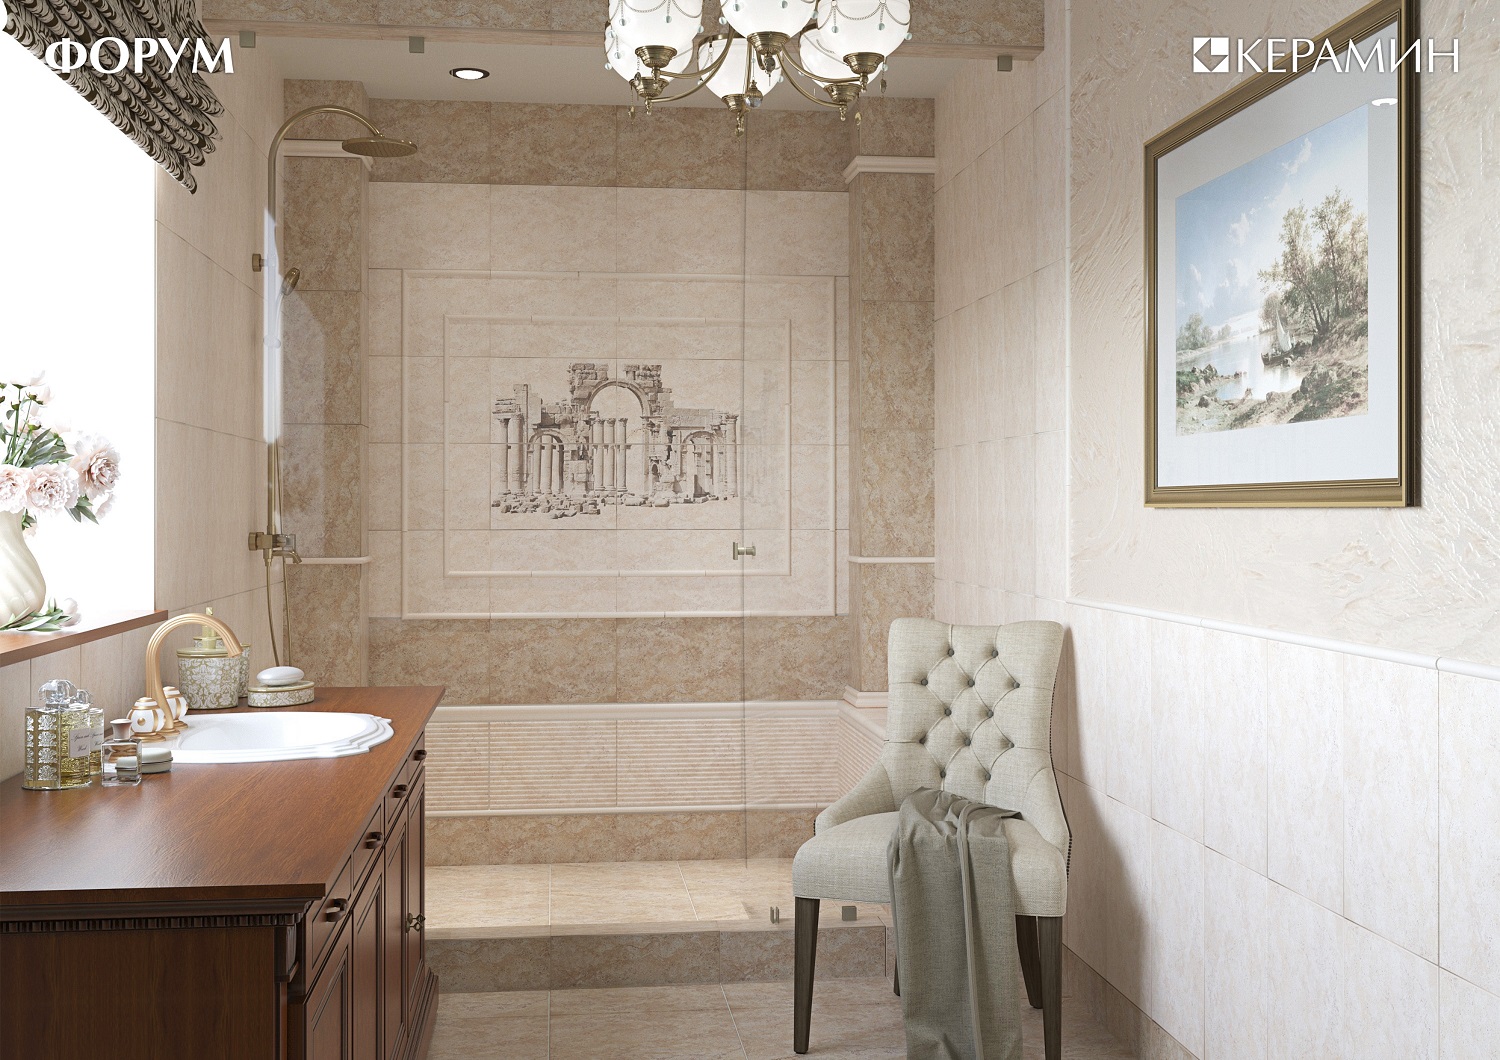 ᐉ Дизайн ванной комнаты - Дизайн інтер'єру будинку або квартири - Форум Строим Дом